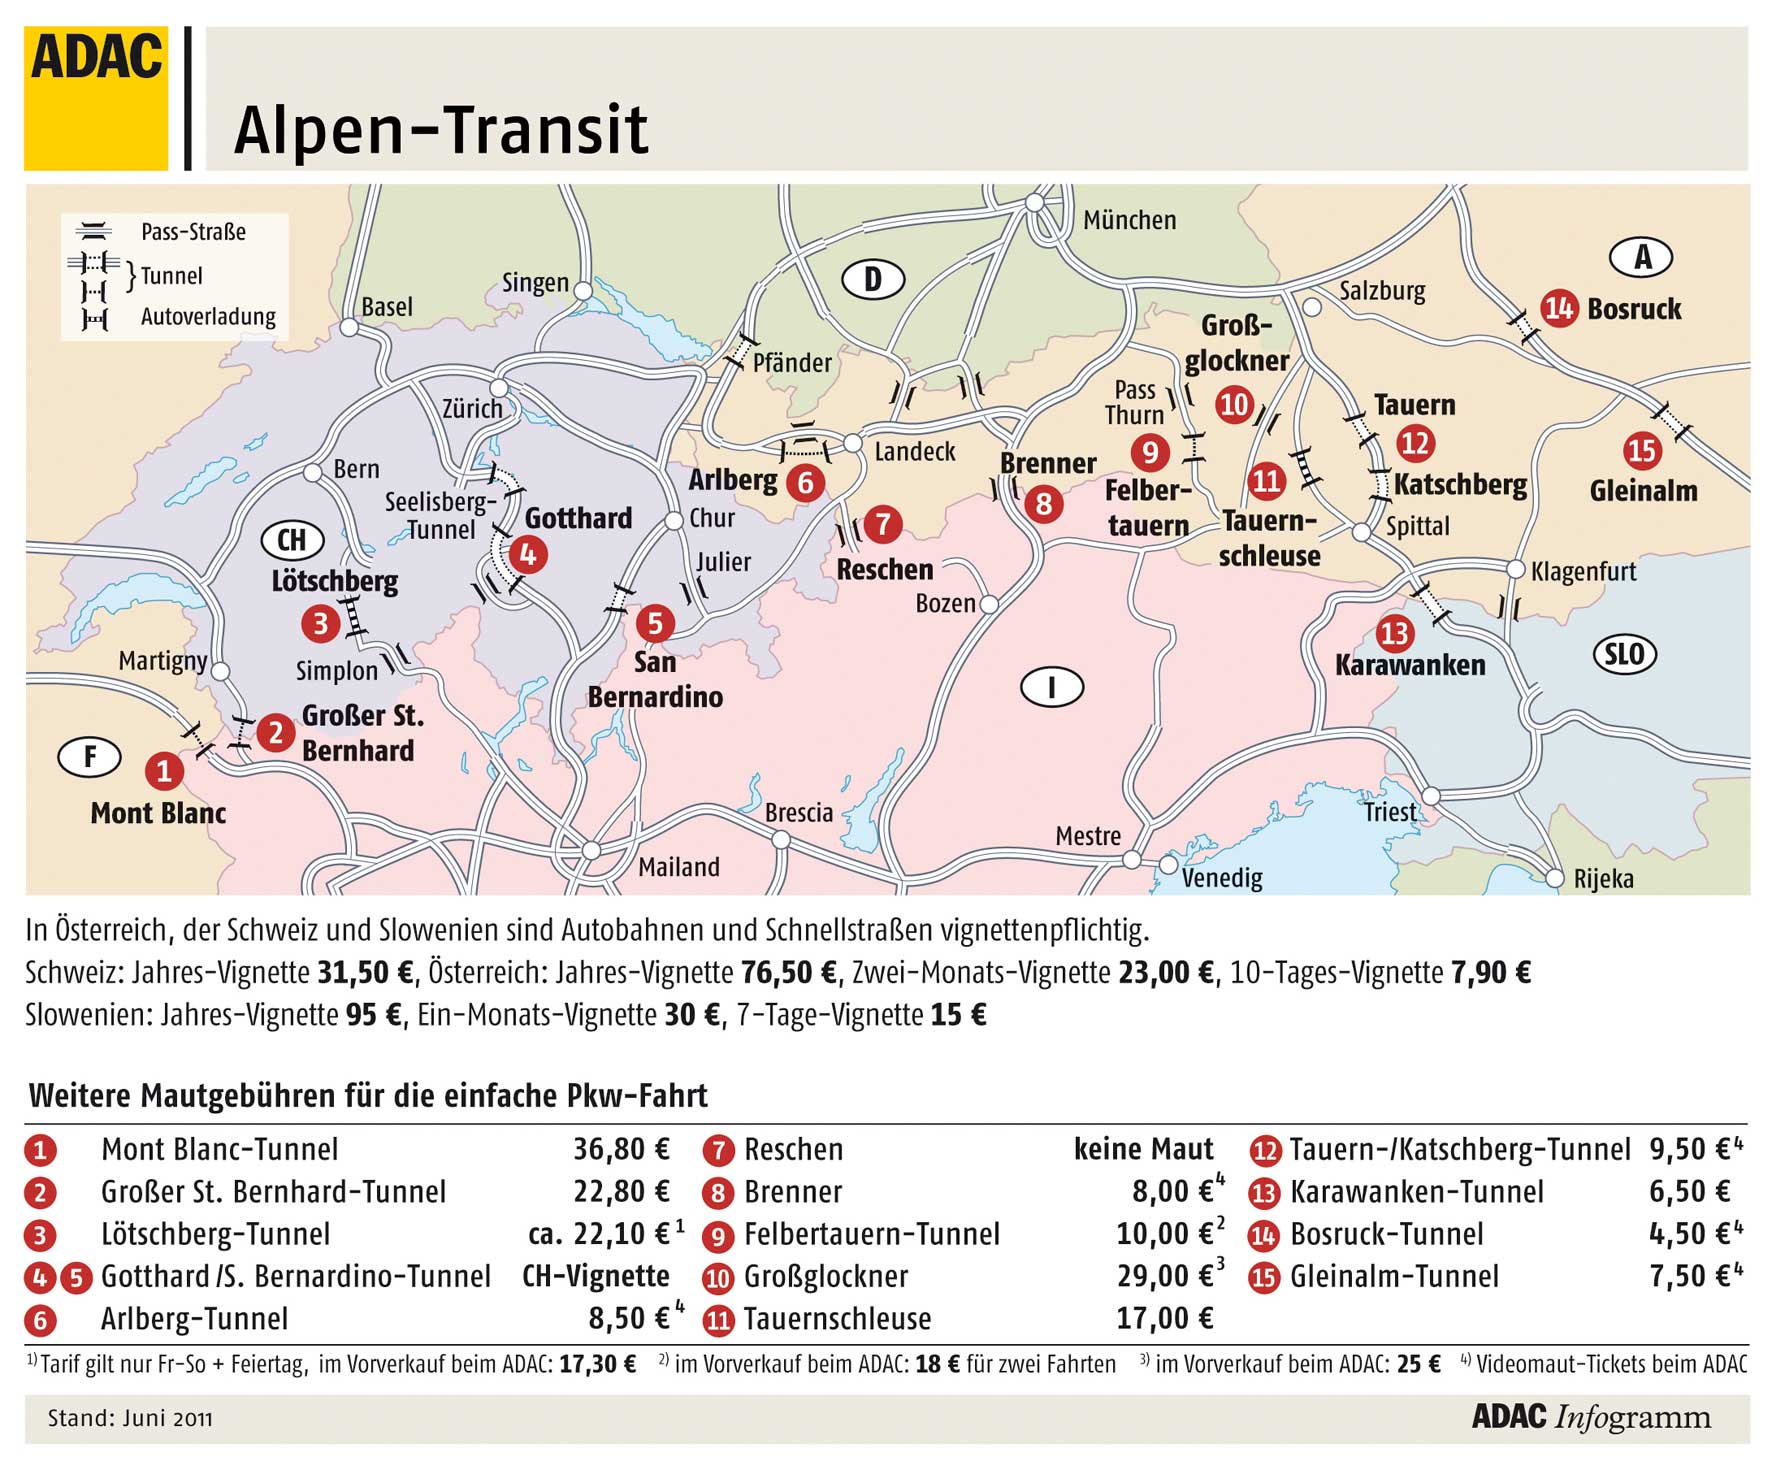 http://www.adventure-magazin.de/daten_tipps/Alpen_Transit_2011.jpg